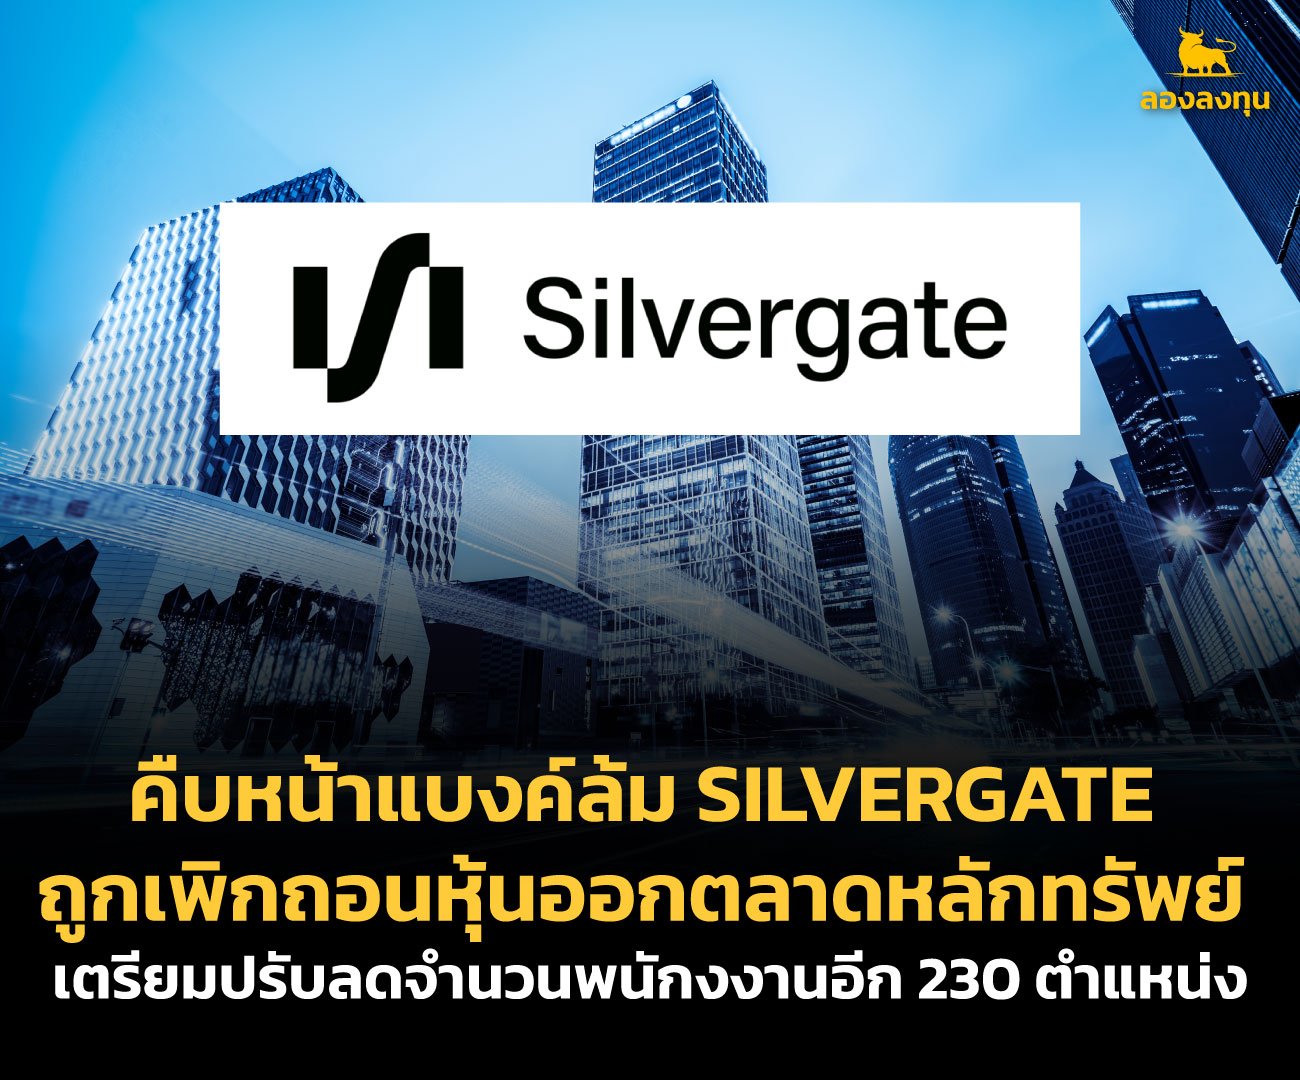 คืบหน้า Silvergate ถูกเพิกถอนหุ้นออกตลาด ลดพนักงาน 230 คน